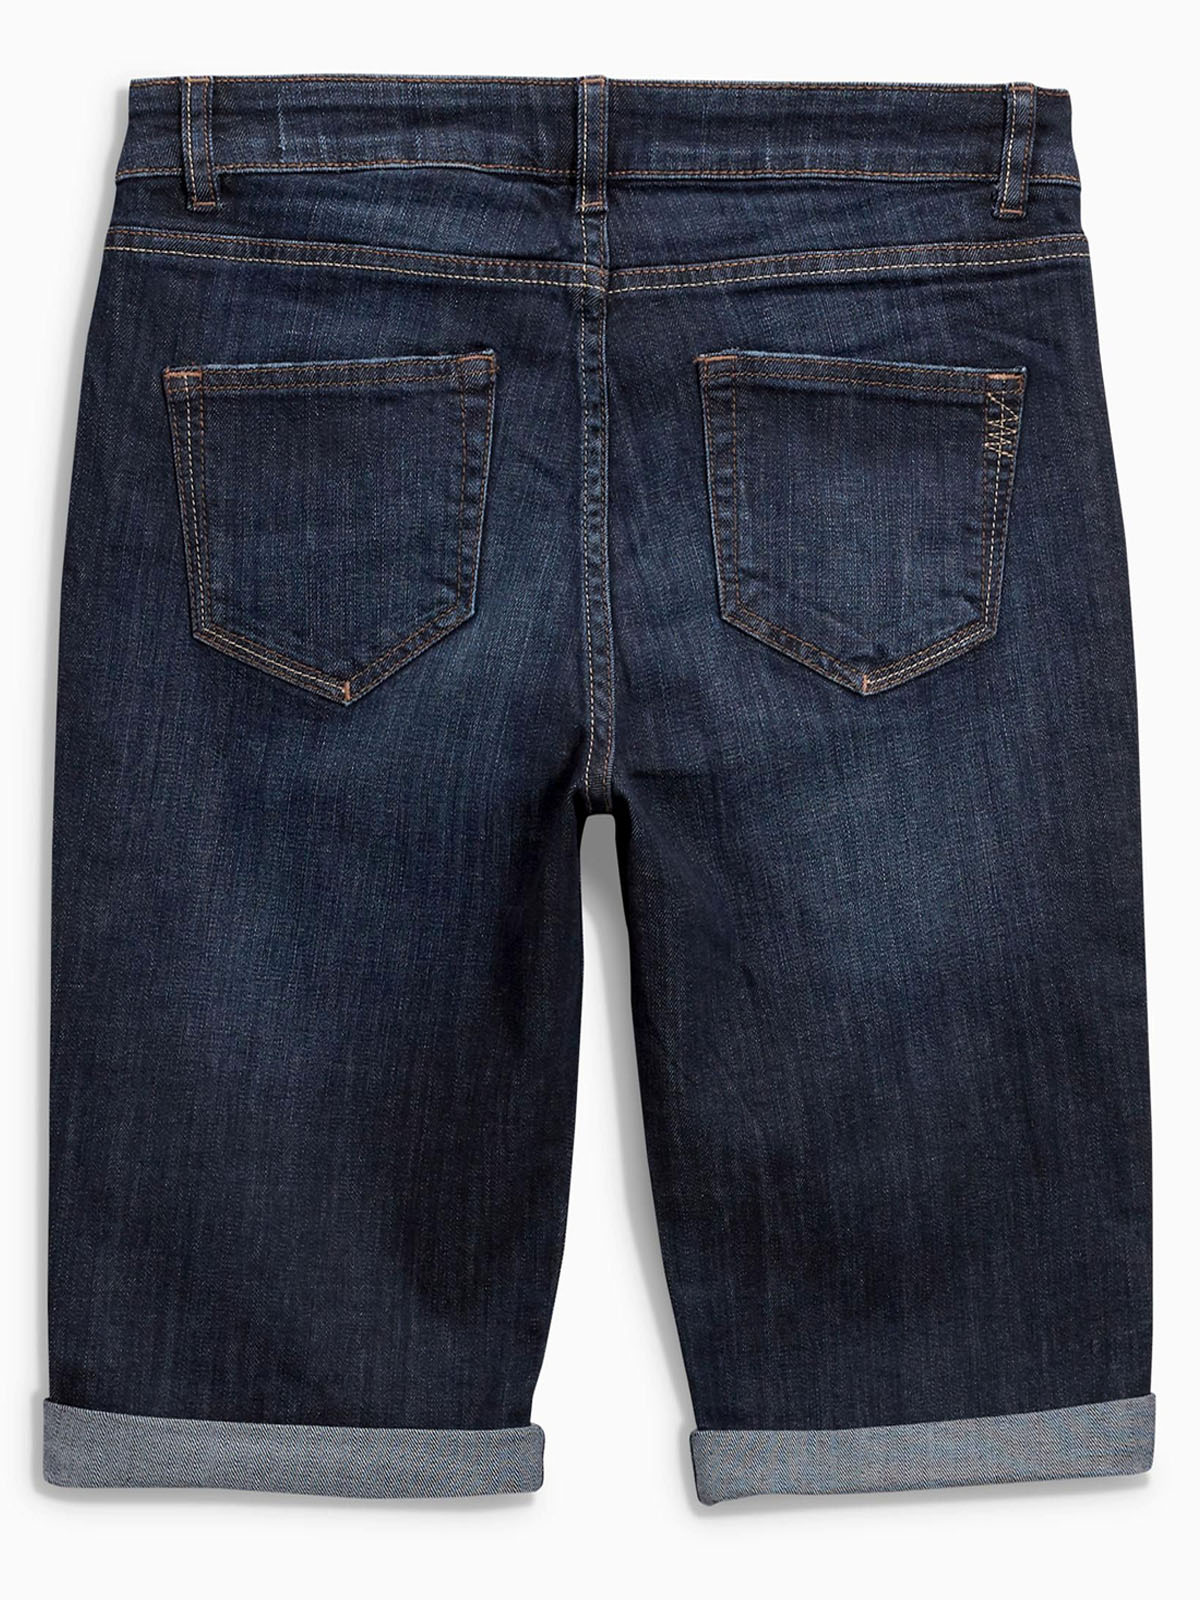 N3XT Regular DARK BLUE Cotton Rich Denim Knee Shorts - Size 6 to 22